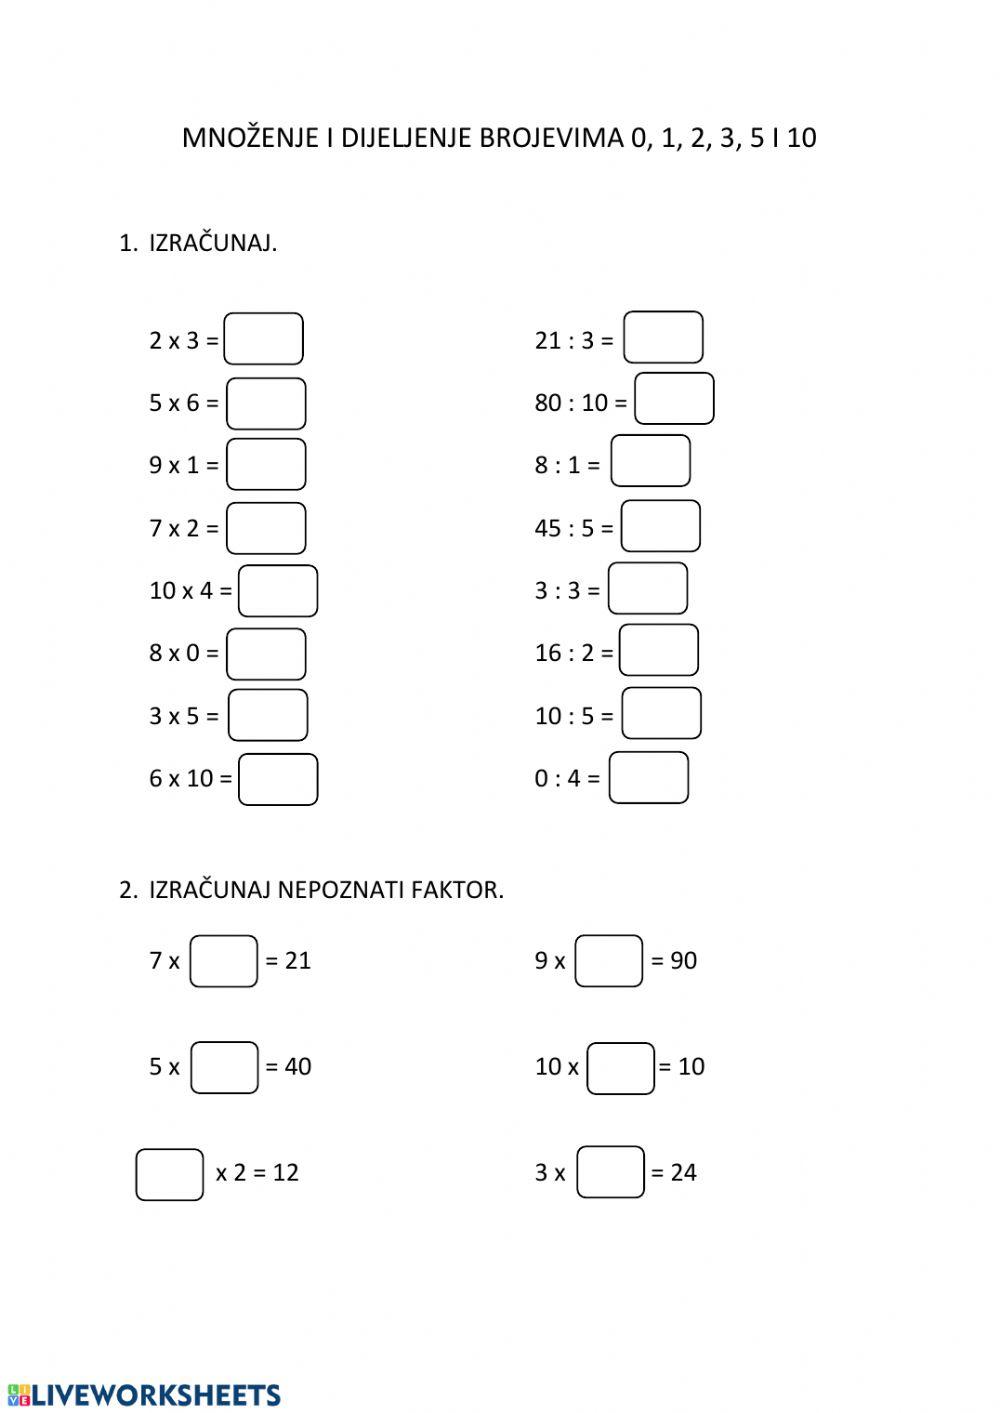 Množenje i dijeljenje brojevima 0, 1, 2, 3, 5, i 10